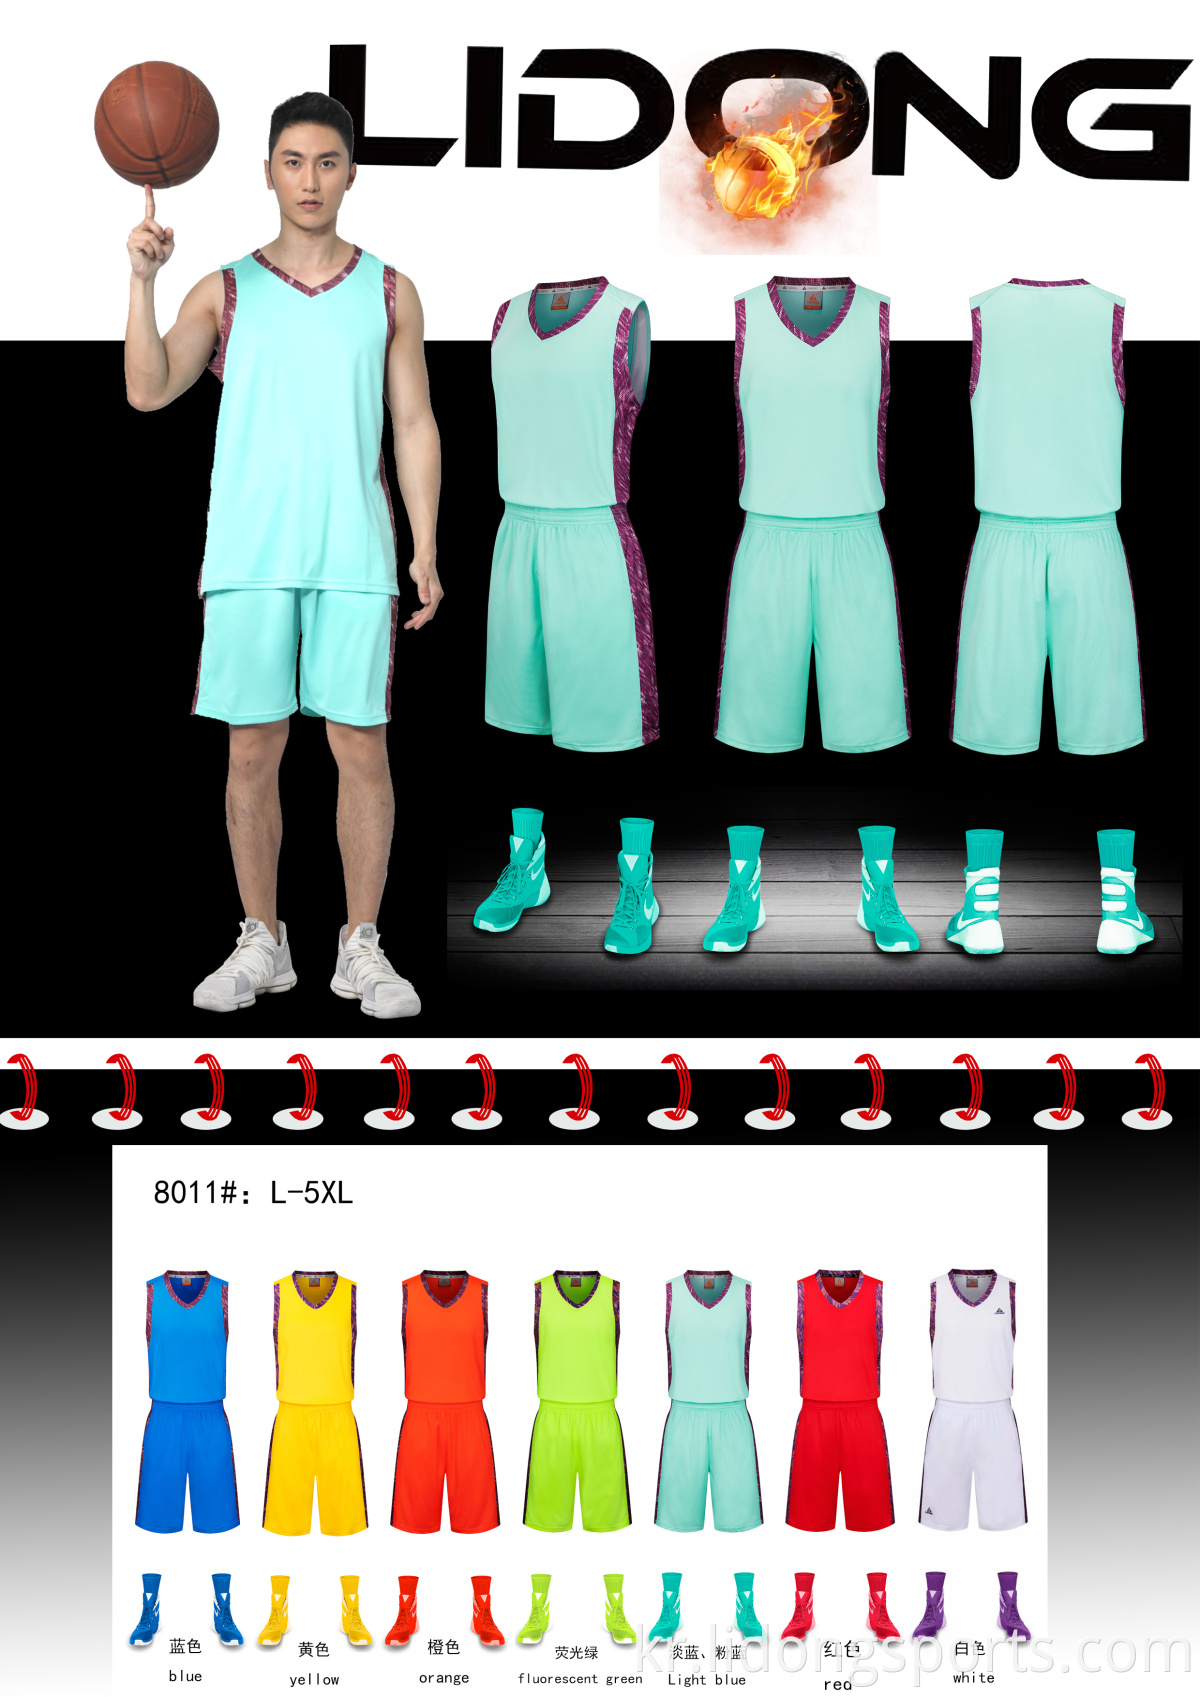 디자인 멀티 컬러 승화 학교 농구 유니폼 맞춰진 농구 유니폼 디자인